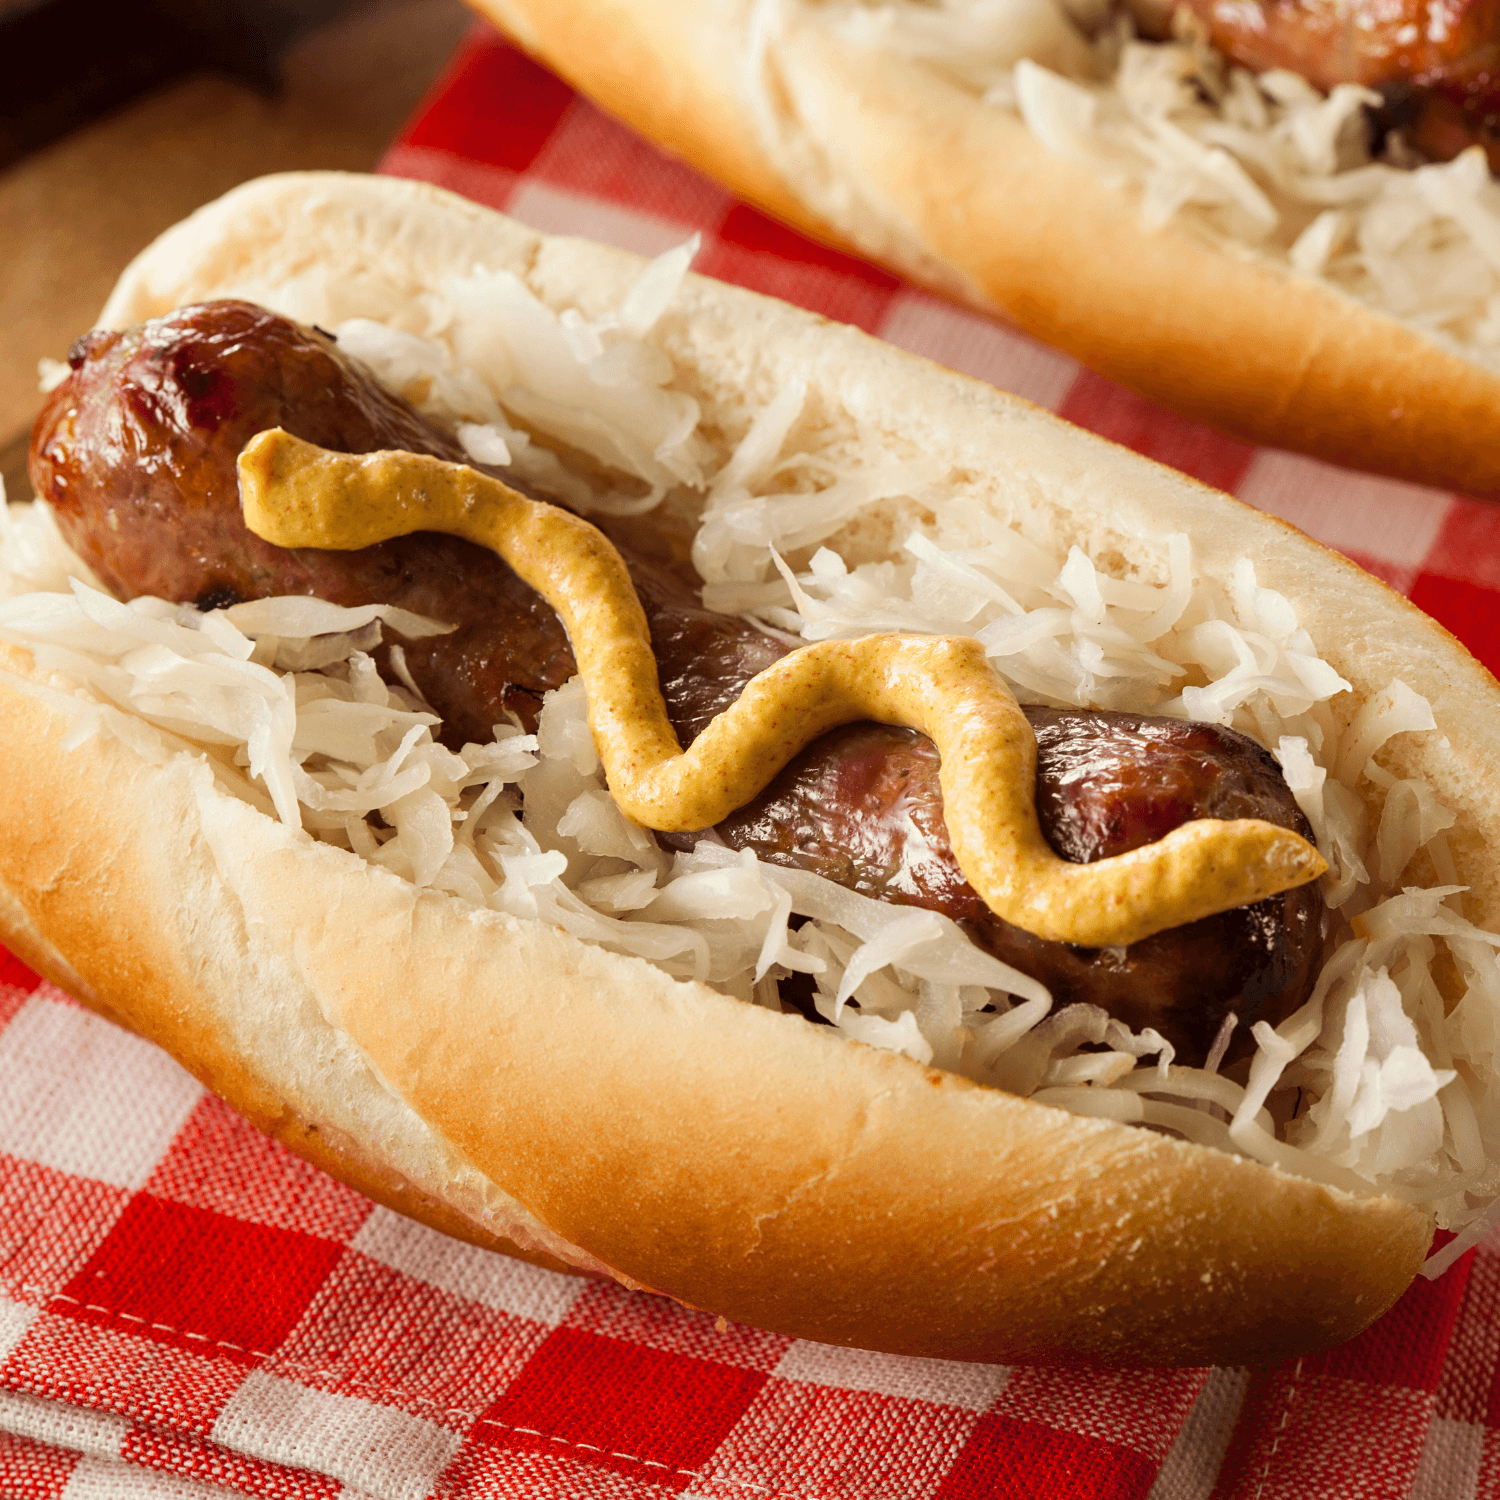 sausage with sauerkraut